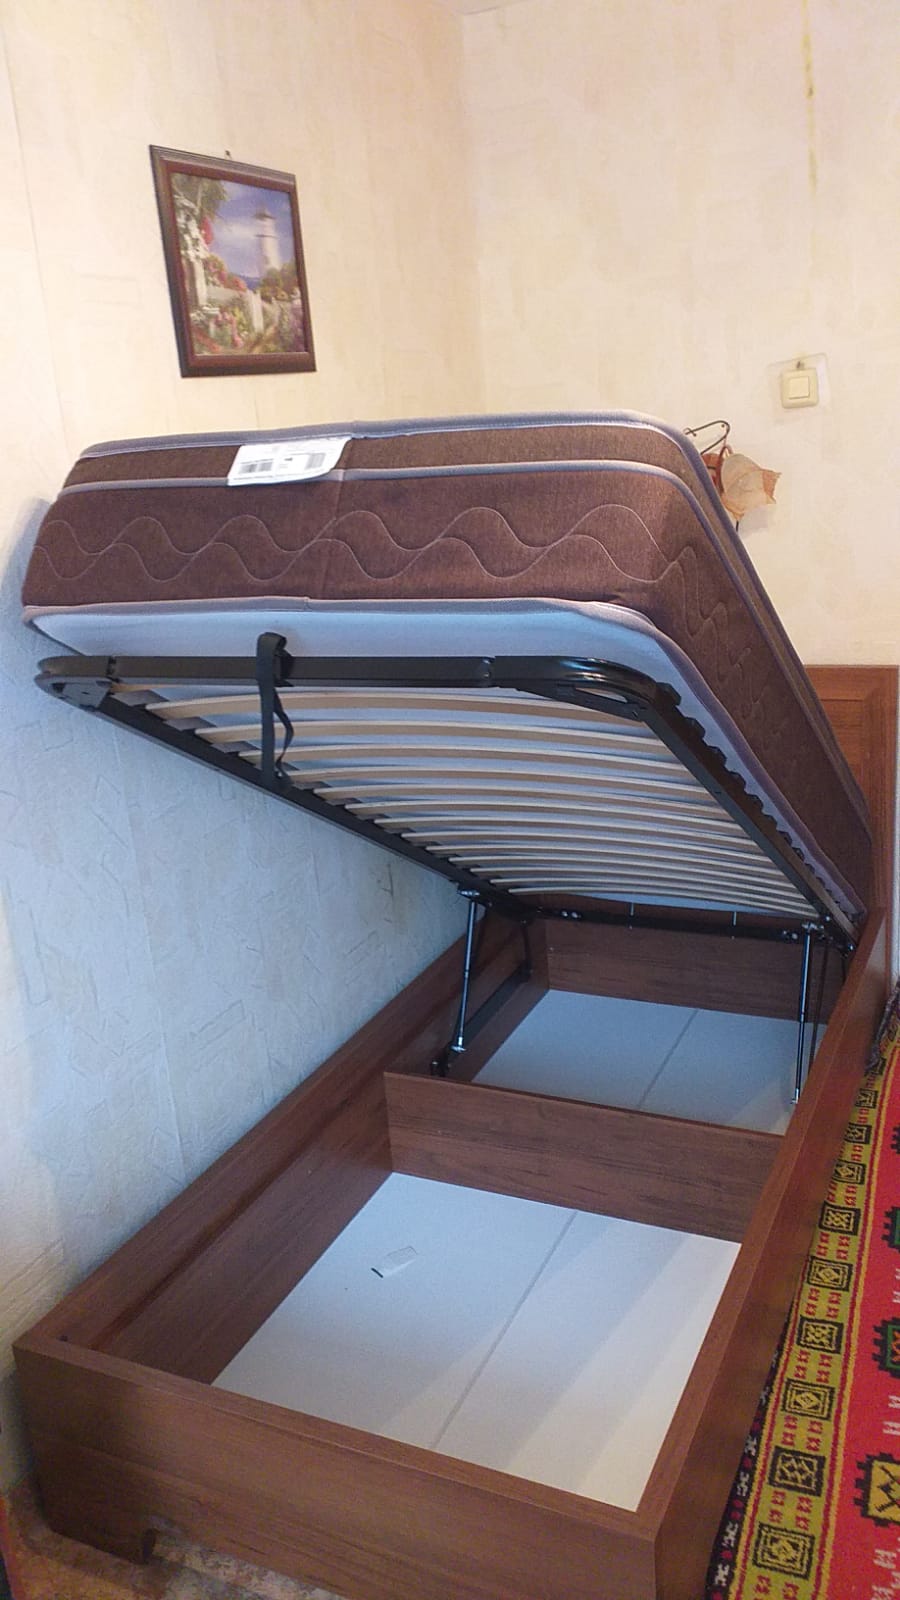 Односпальная кровать "Мальта" 90 х 200 с подъемным механизмом цвет венге / punto 01